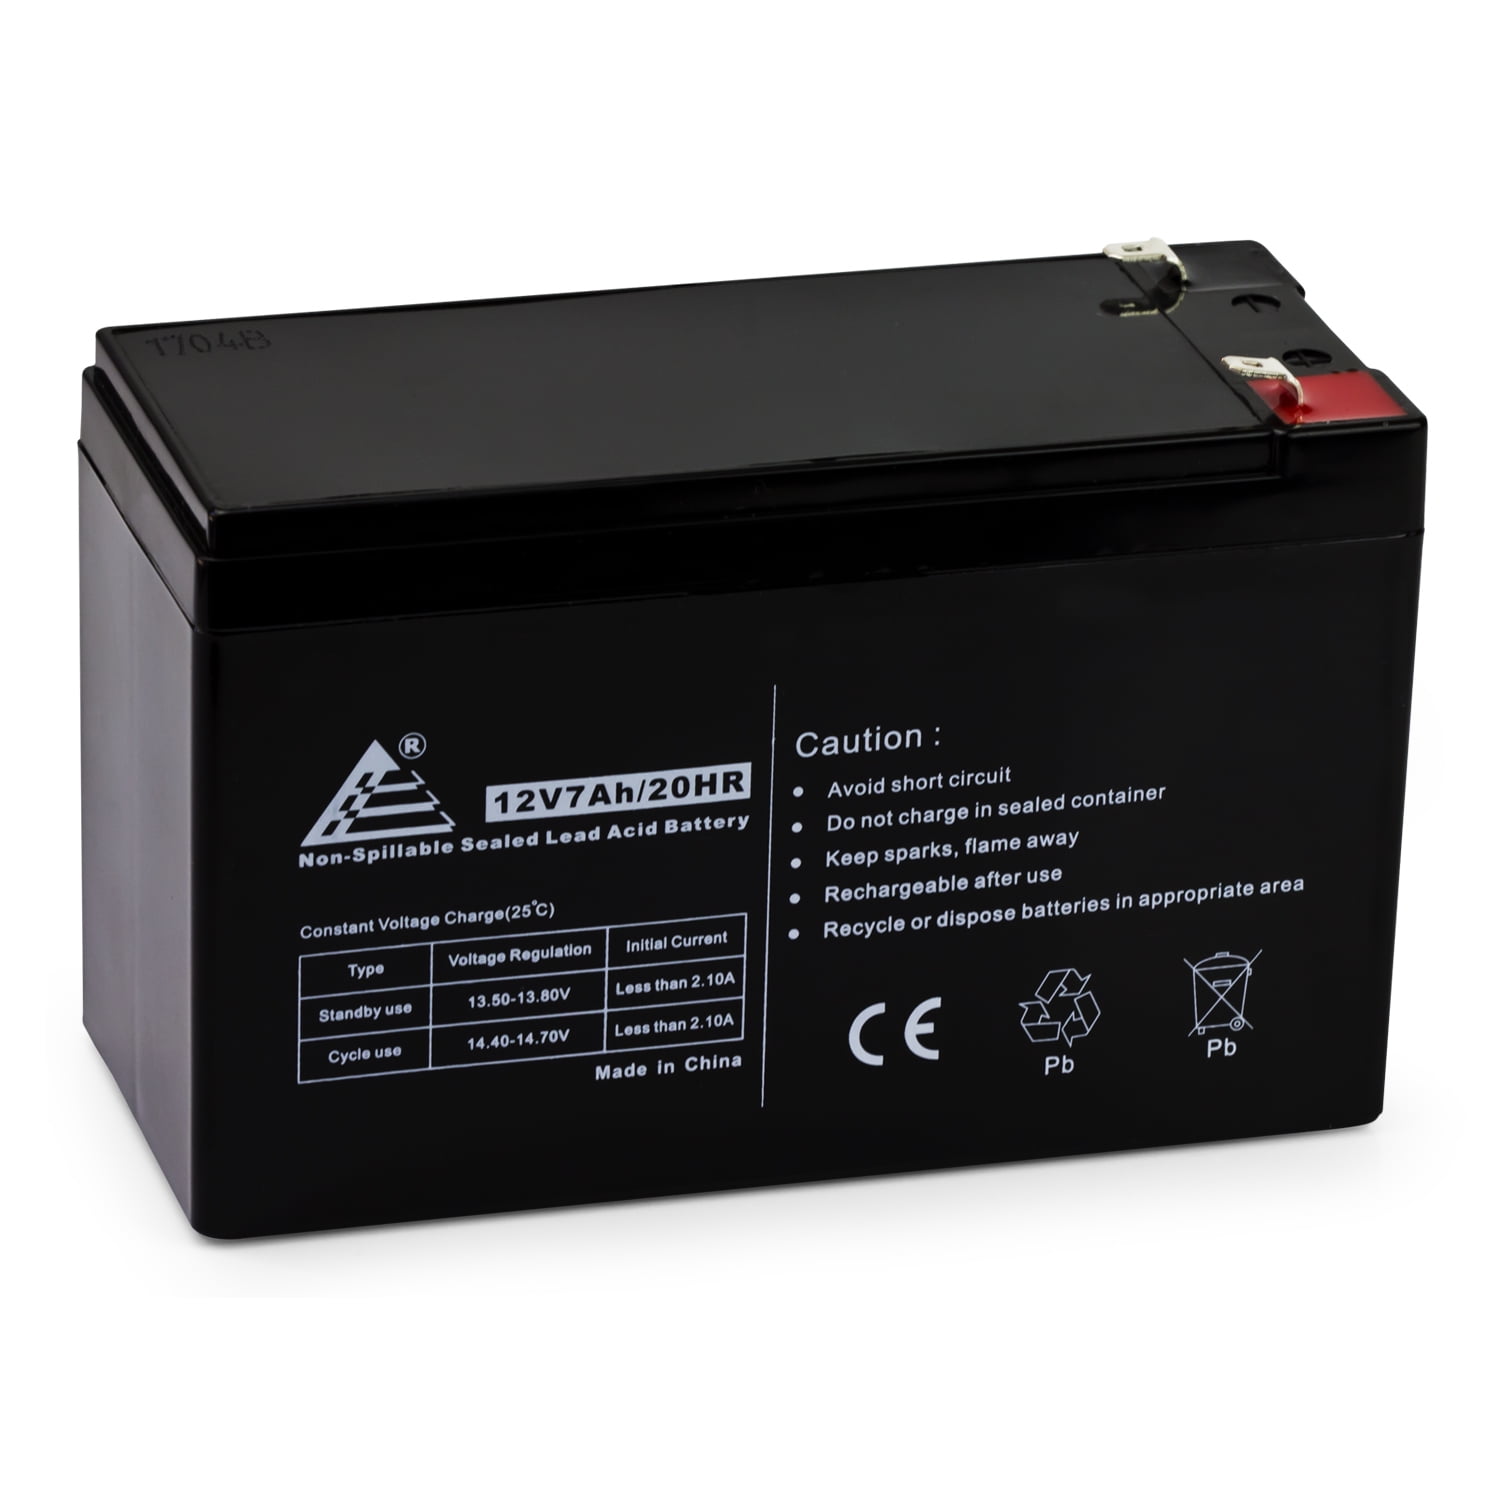 VL-E665U VL-A10H Premium Battery for Sharp VL-E66U VL-A10S VL-AH50S VL-E720 